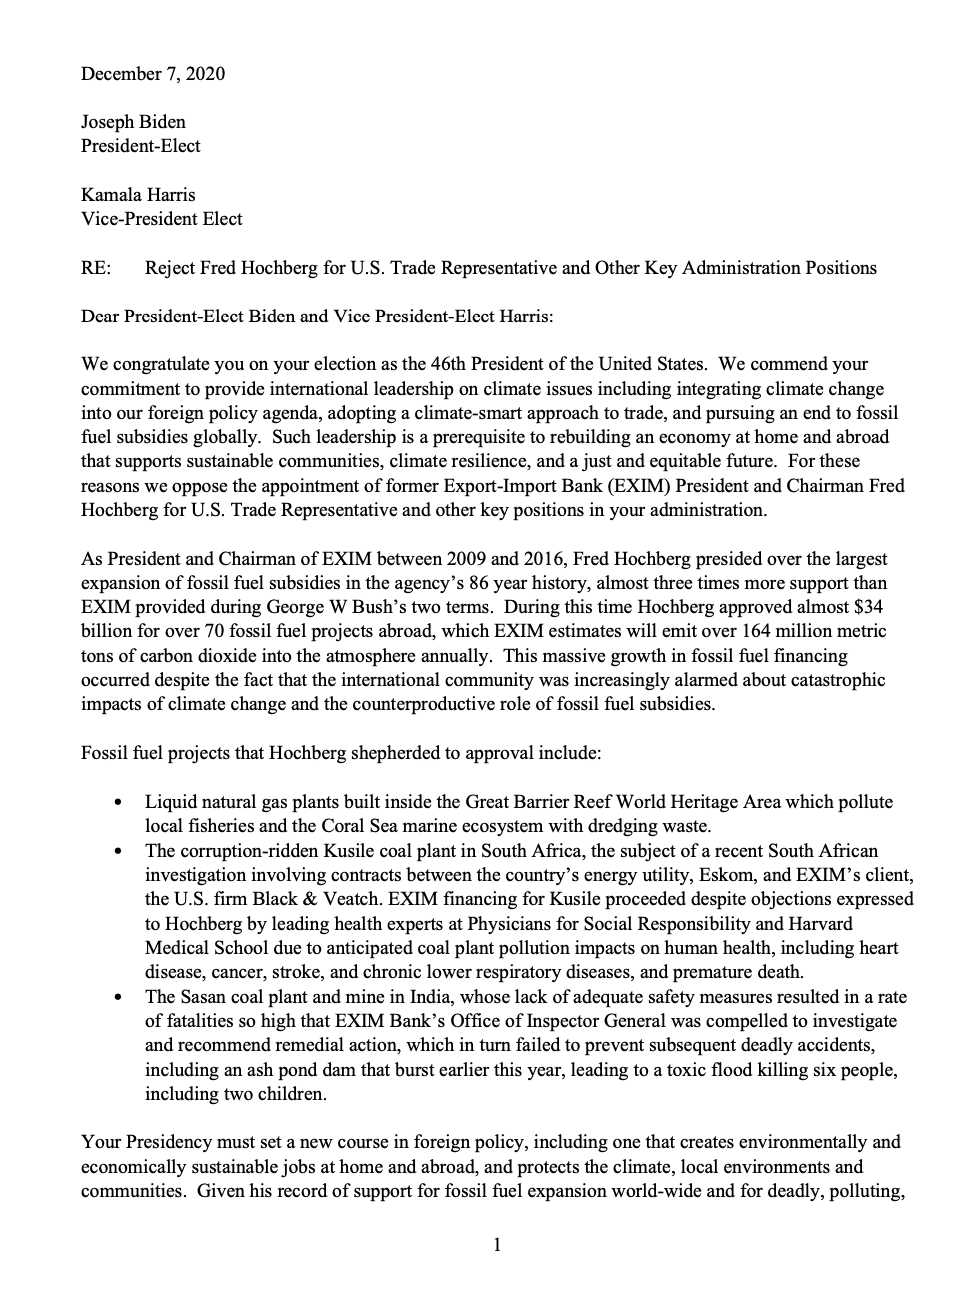 Letter Opposing Fred Hochberg for Biden Administration